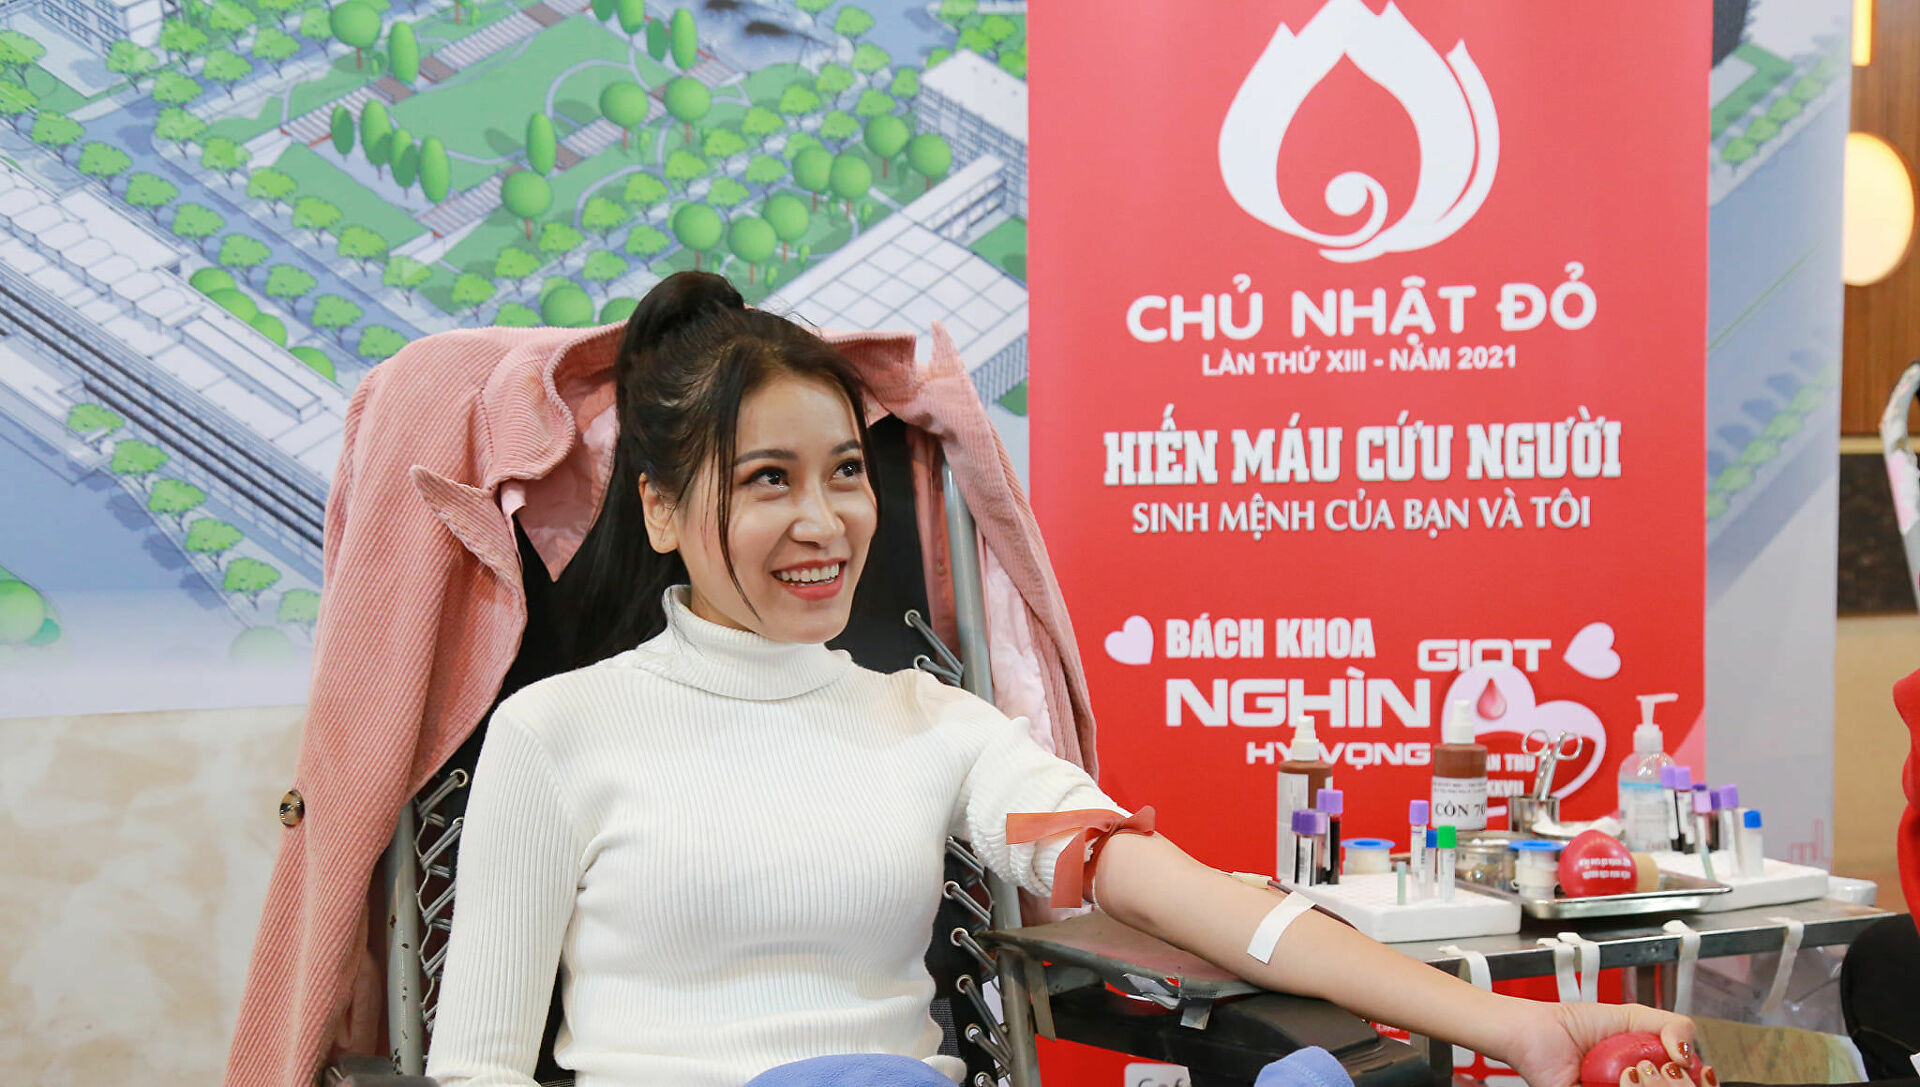 Nhiều người tích cực hưởng ứng chương trình hiến máu Chủ nhật Đỏ lần thứ XIII - năm 2021 